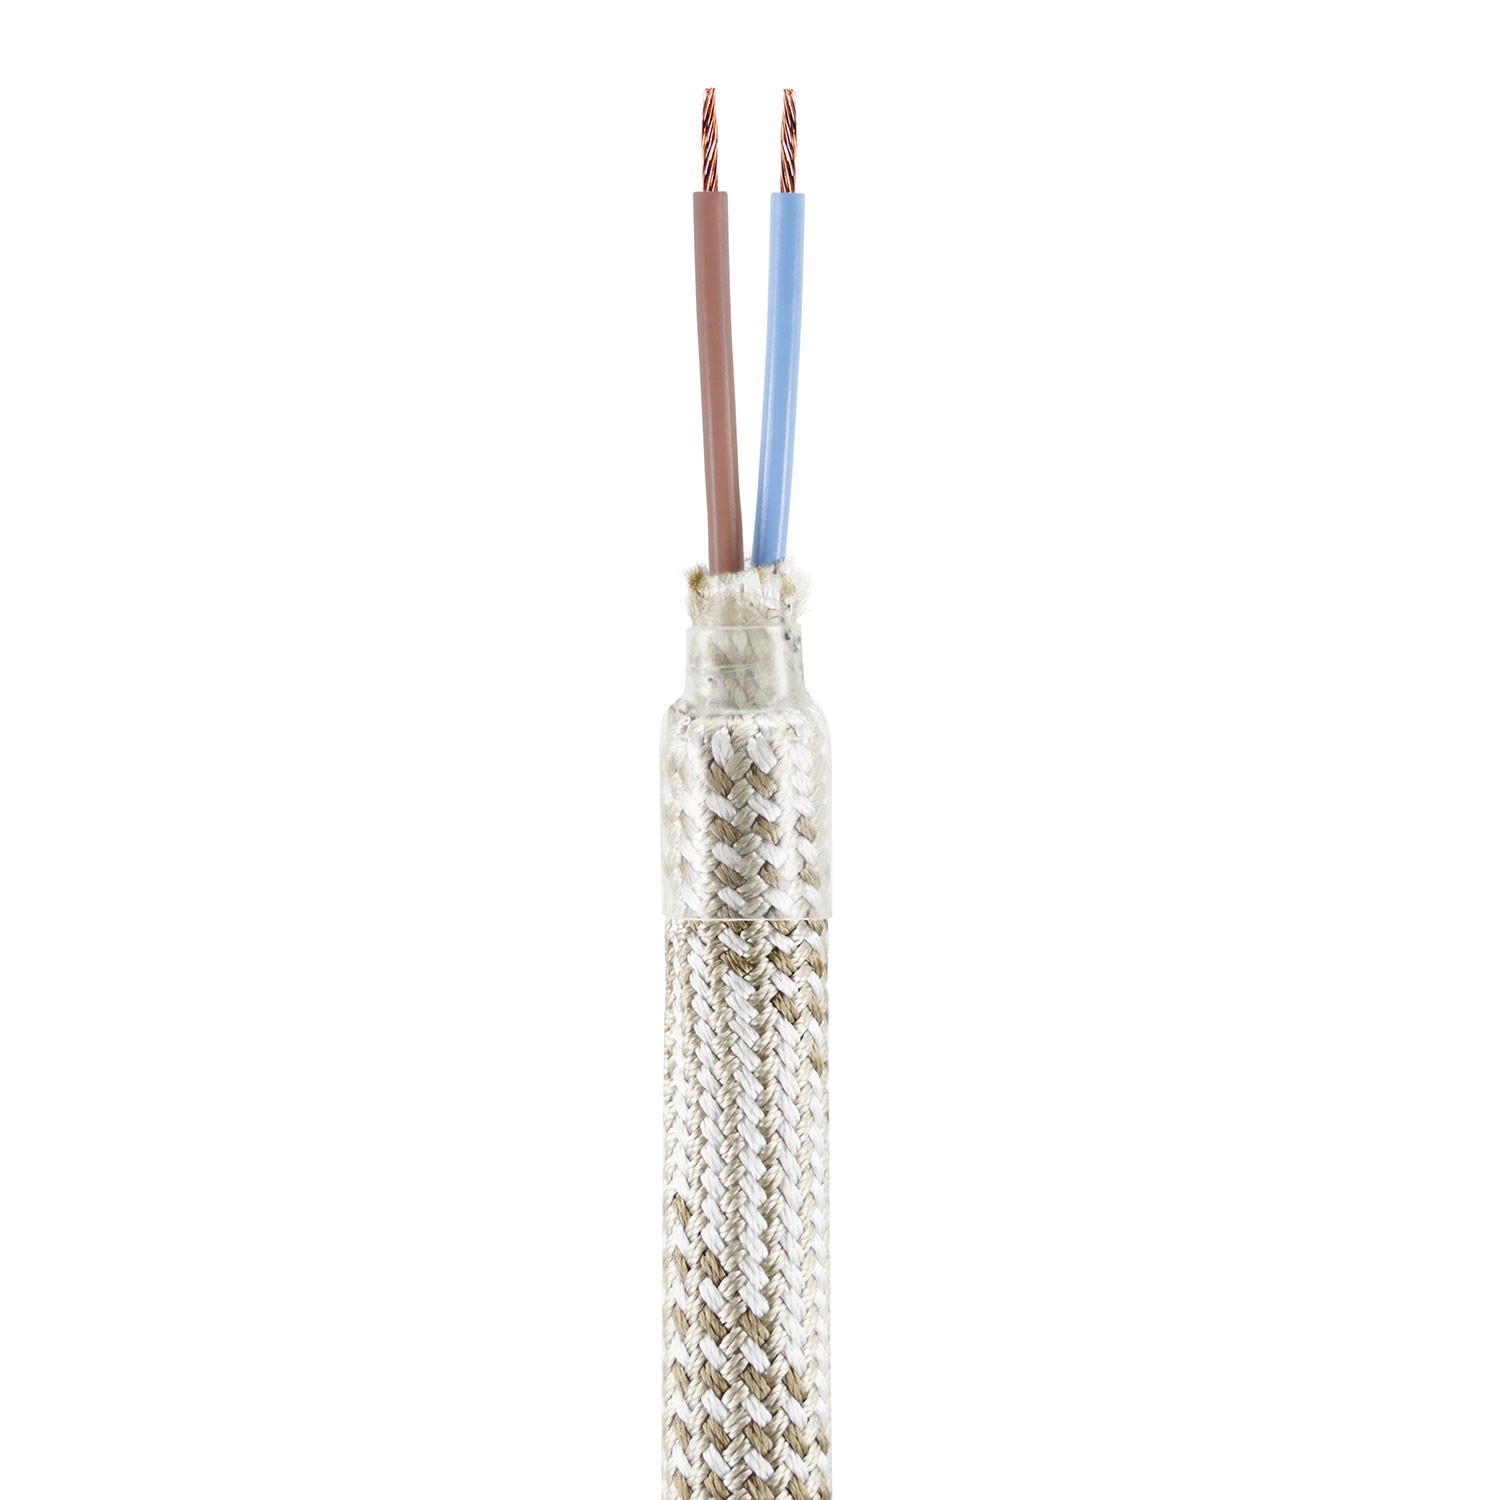 Creative Flex készlet rugalmas csővel, világos Mélange RM72 szövet borítással, fém csatlakozókkal